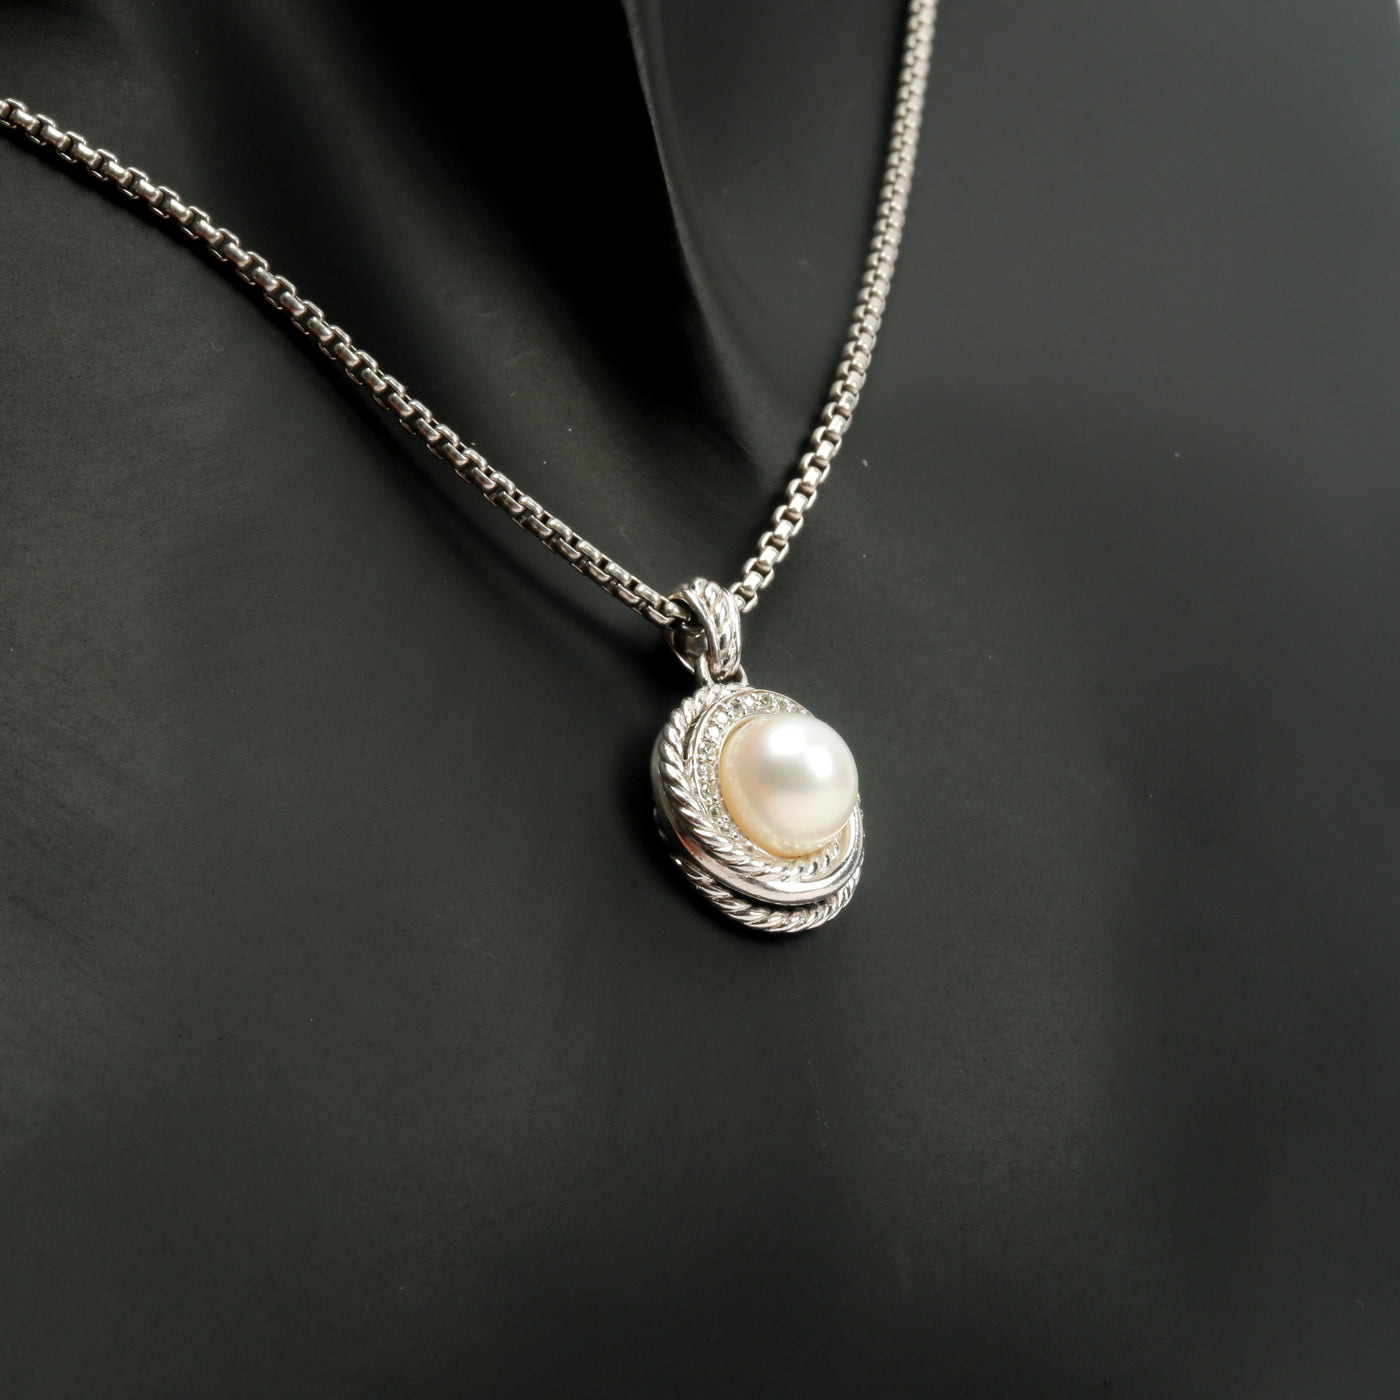 DAVID YURMAN Pearl & Diamond Petite Cerise Necklace - FINAL SALE